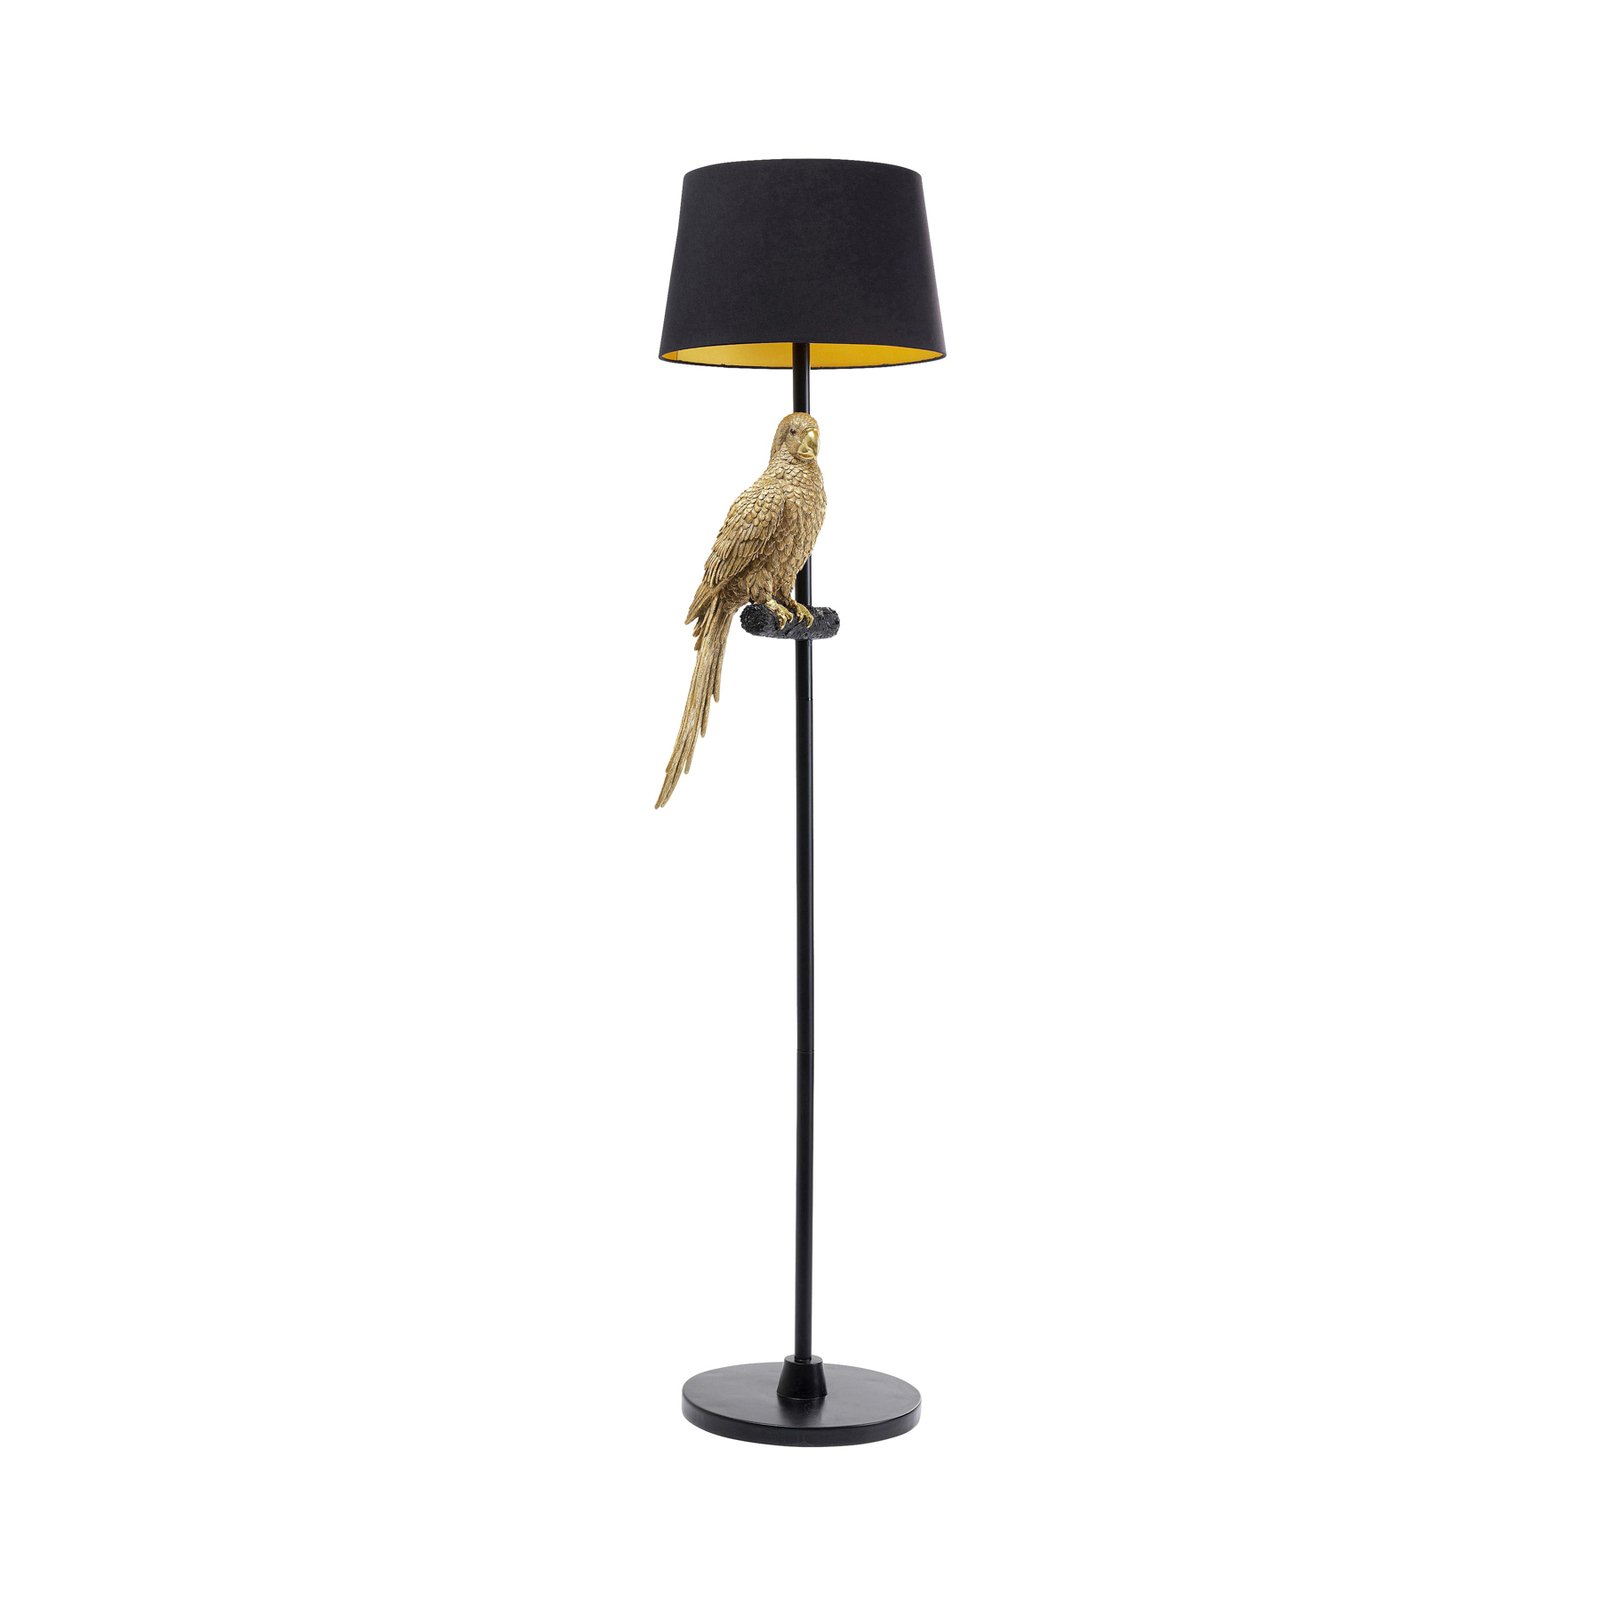 KARE talna svetilka Animal Parrot, črn tekstil, zlata figura